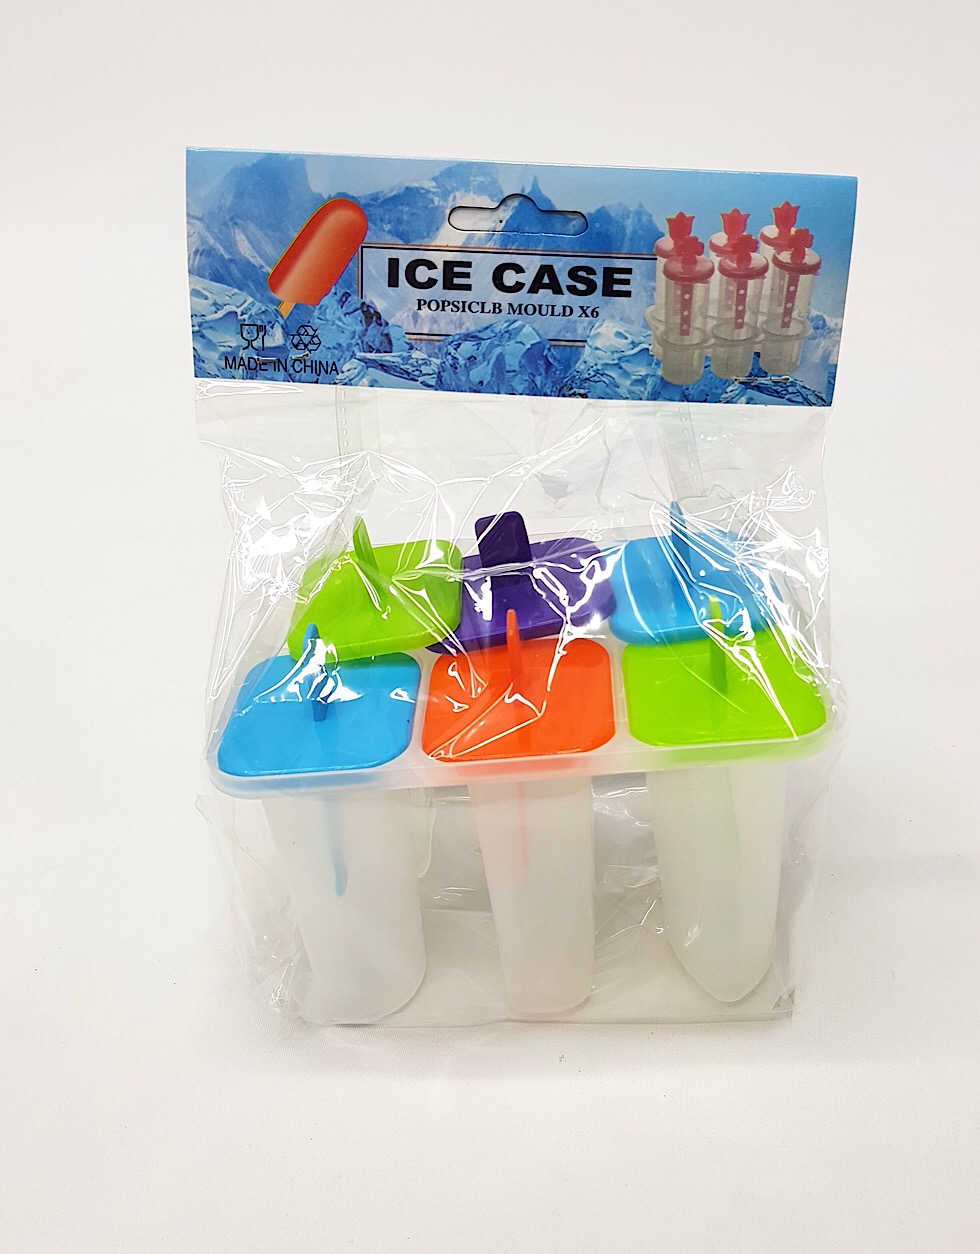 6 Pcs Ice Cases mould